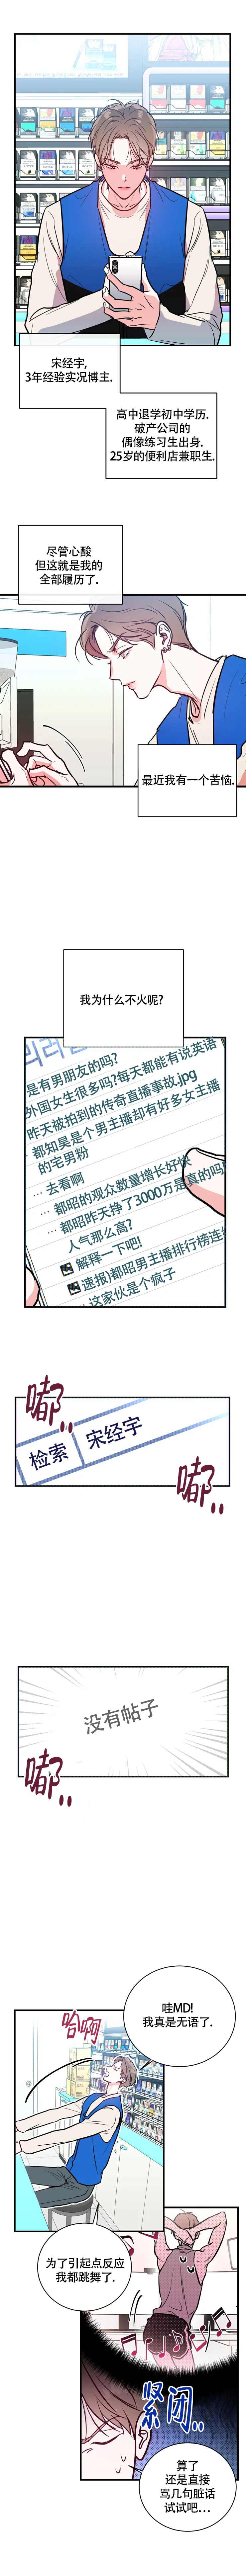 啵乐官网免费漫画2